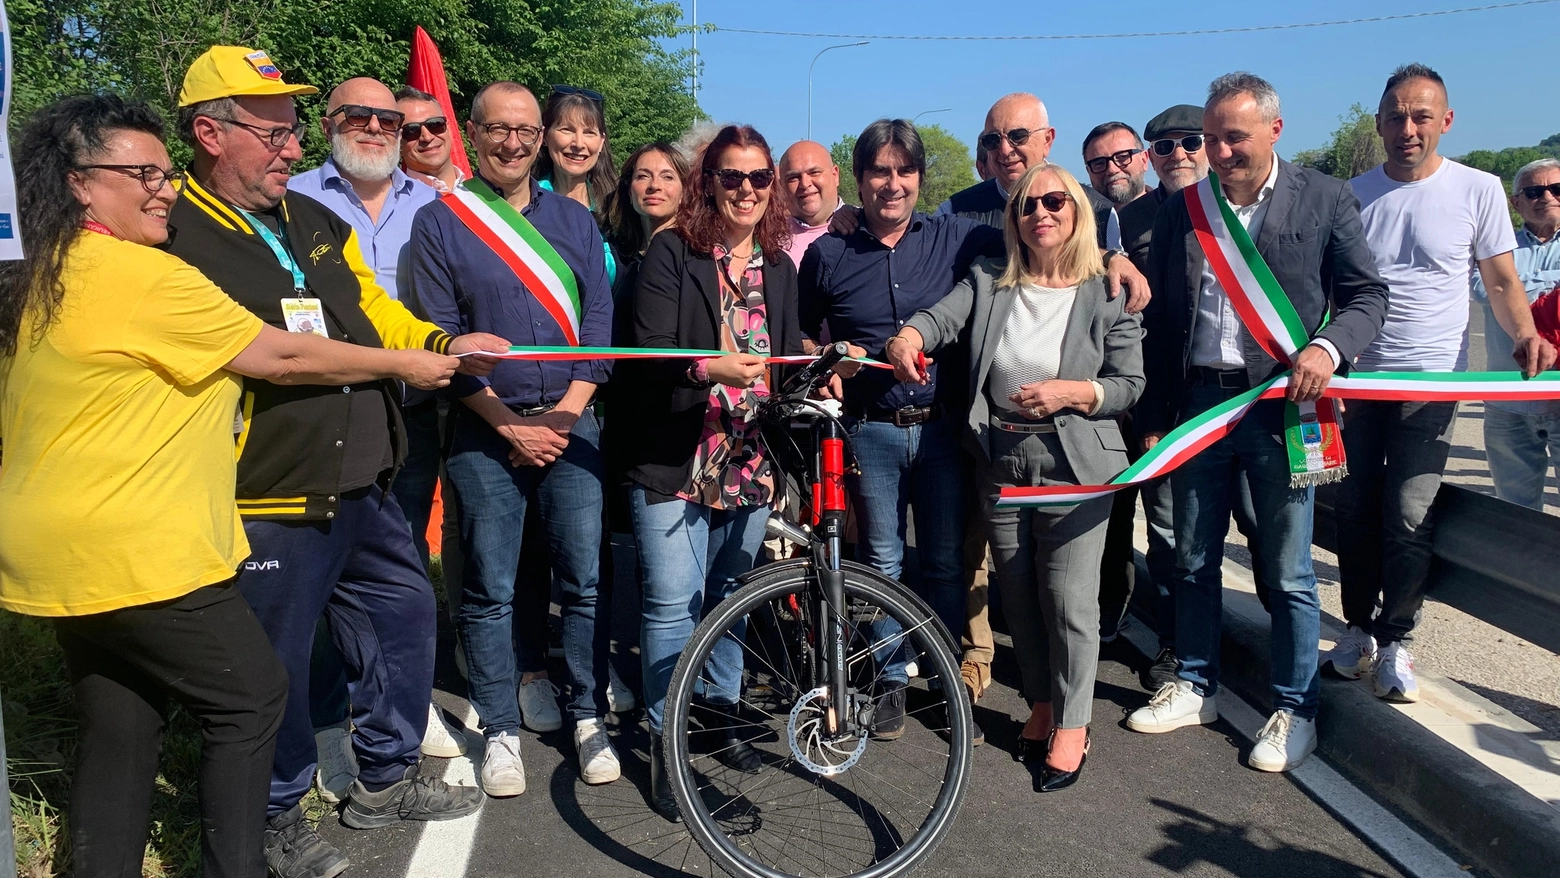 E' stata inaugurata la Ciclovia Adriatica, nuovo tratto che collega la provincia di Pesaro a quella di Rimini